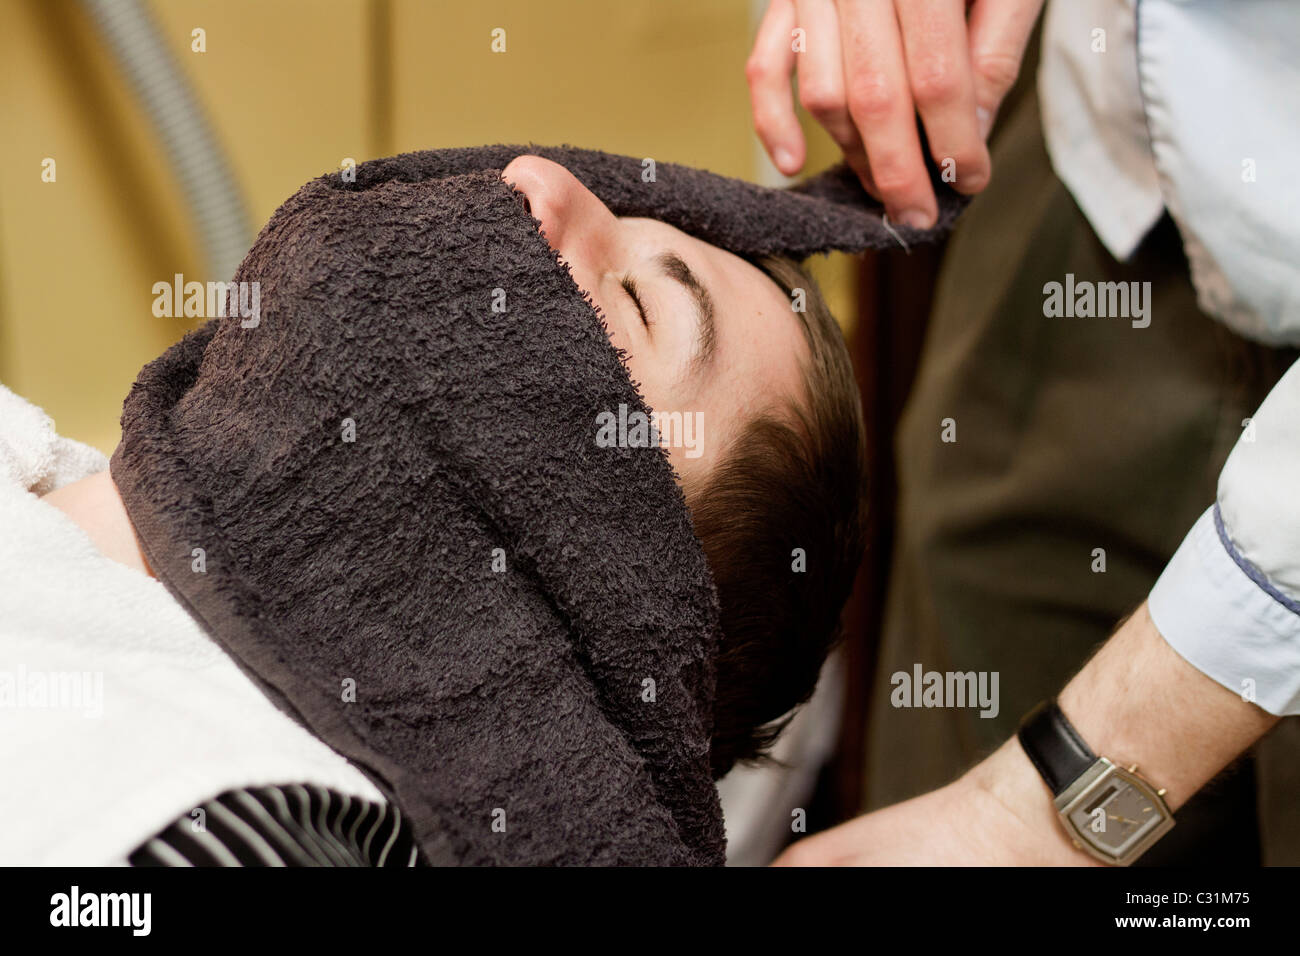 Un hombre obtiene una toalla caliente sobre su rostro antes de afeitar navaja recta en Omaha, Nebraska, EEUU. Foto de stock